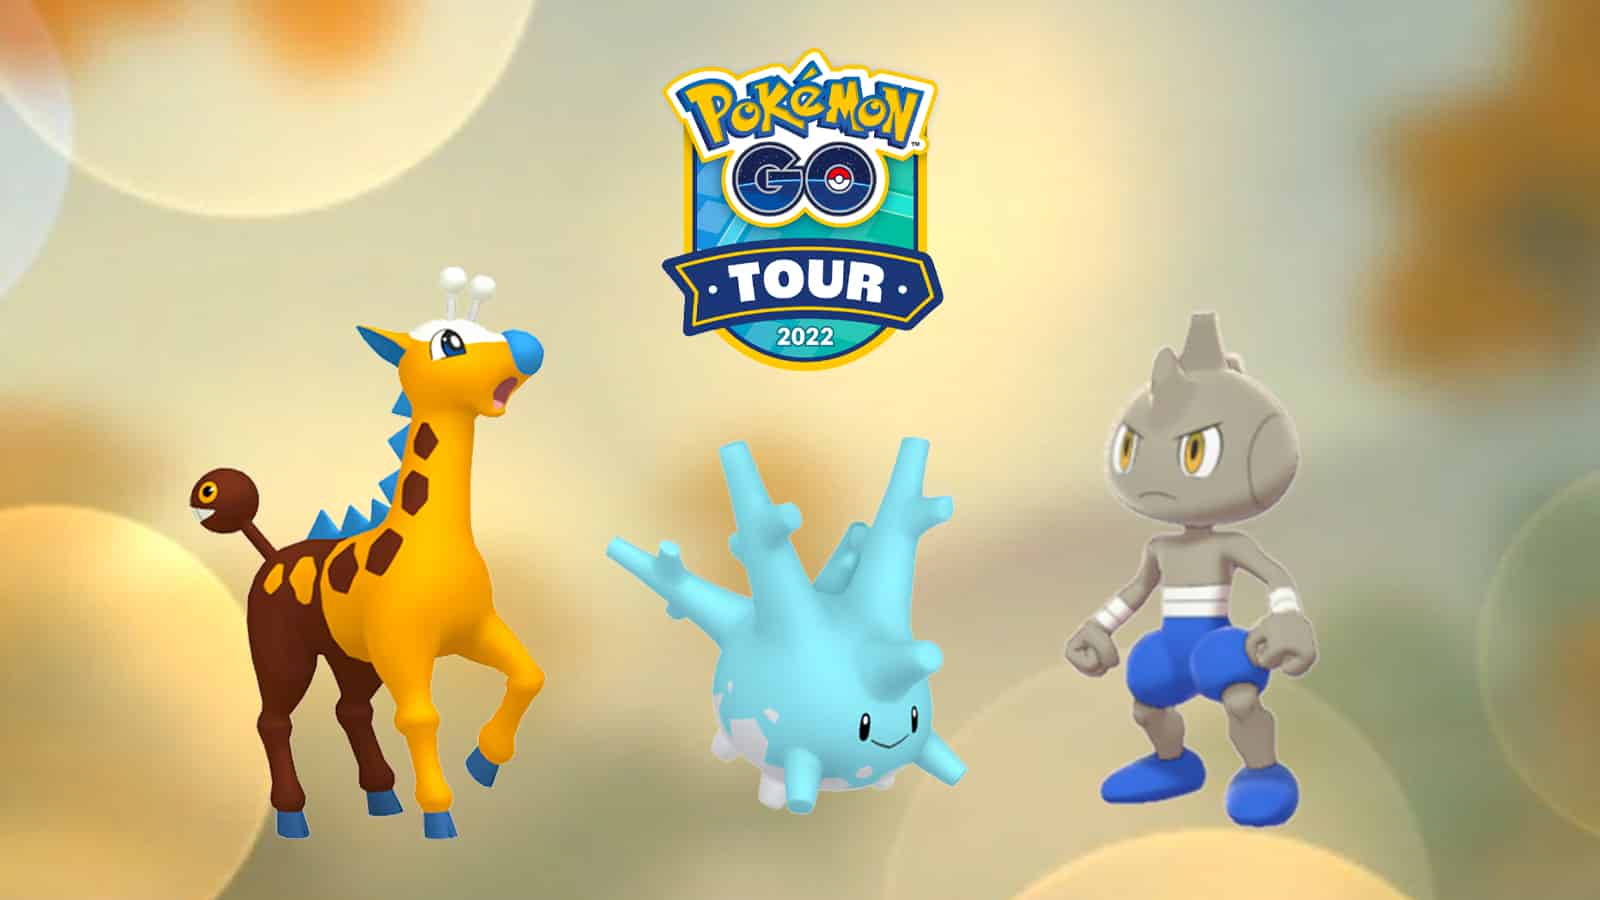 Pokémon GO Tour Johto: Complete Guide